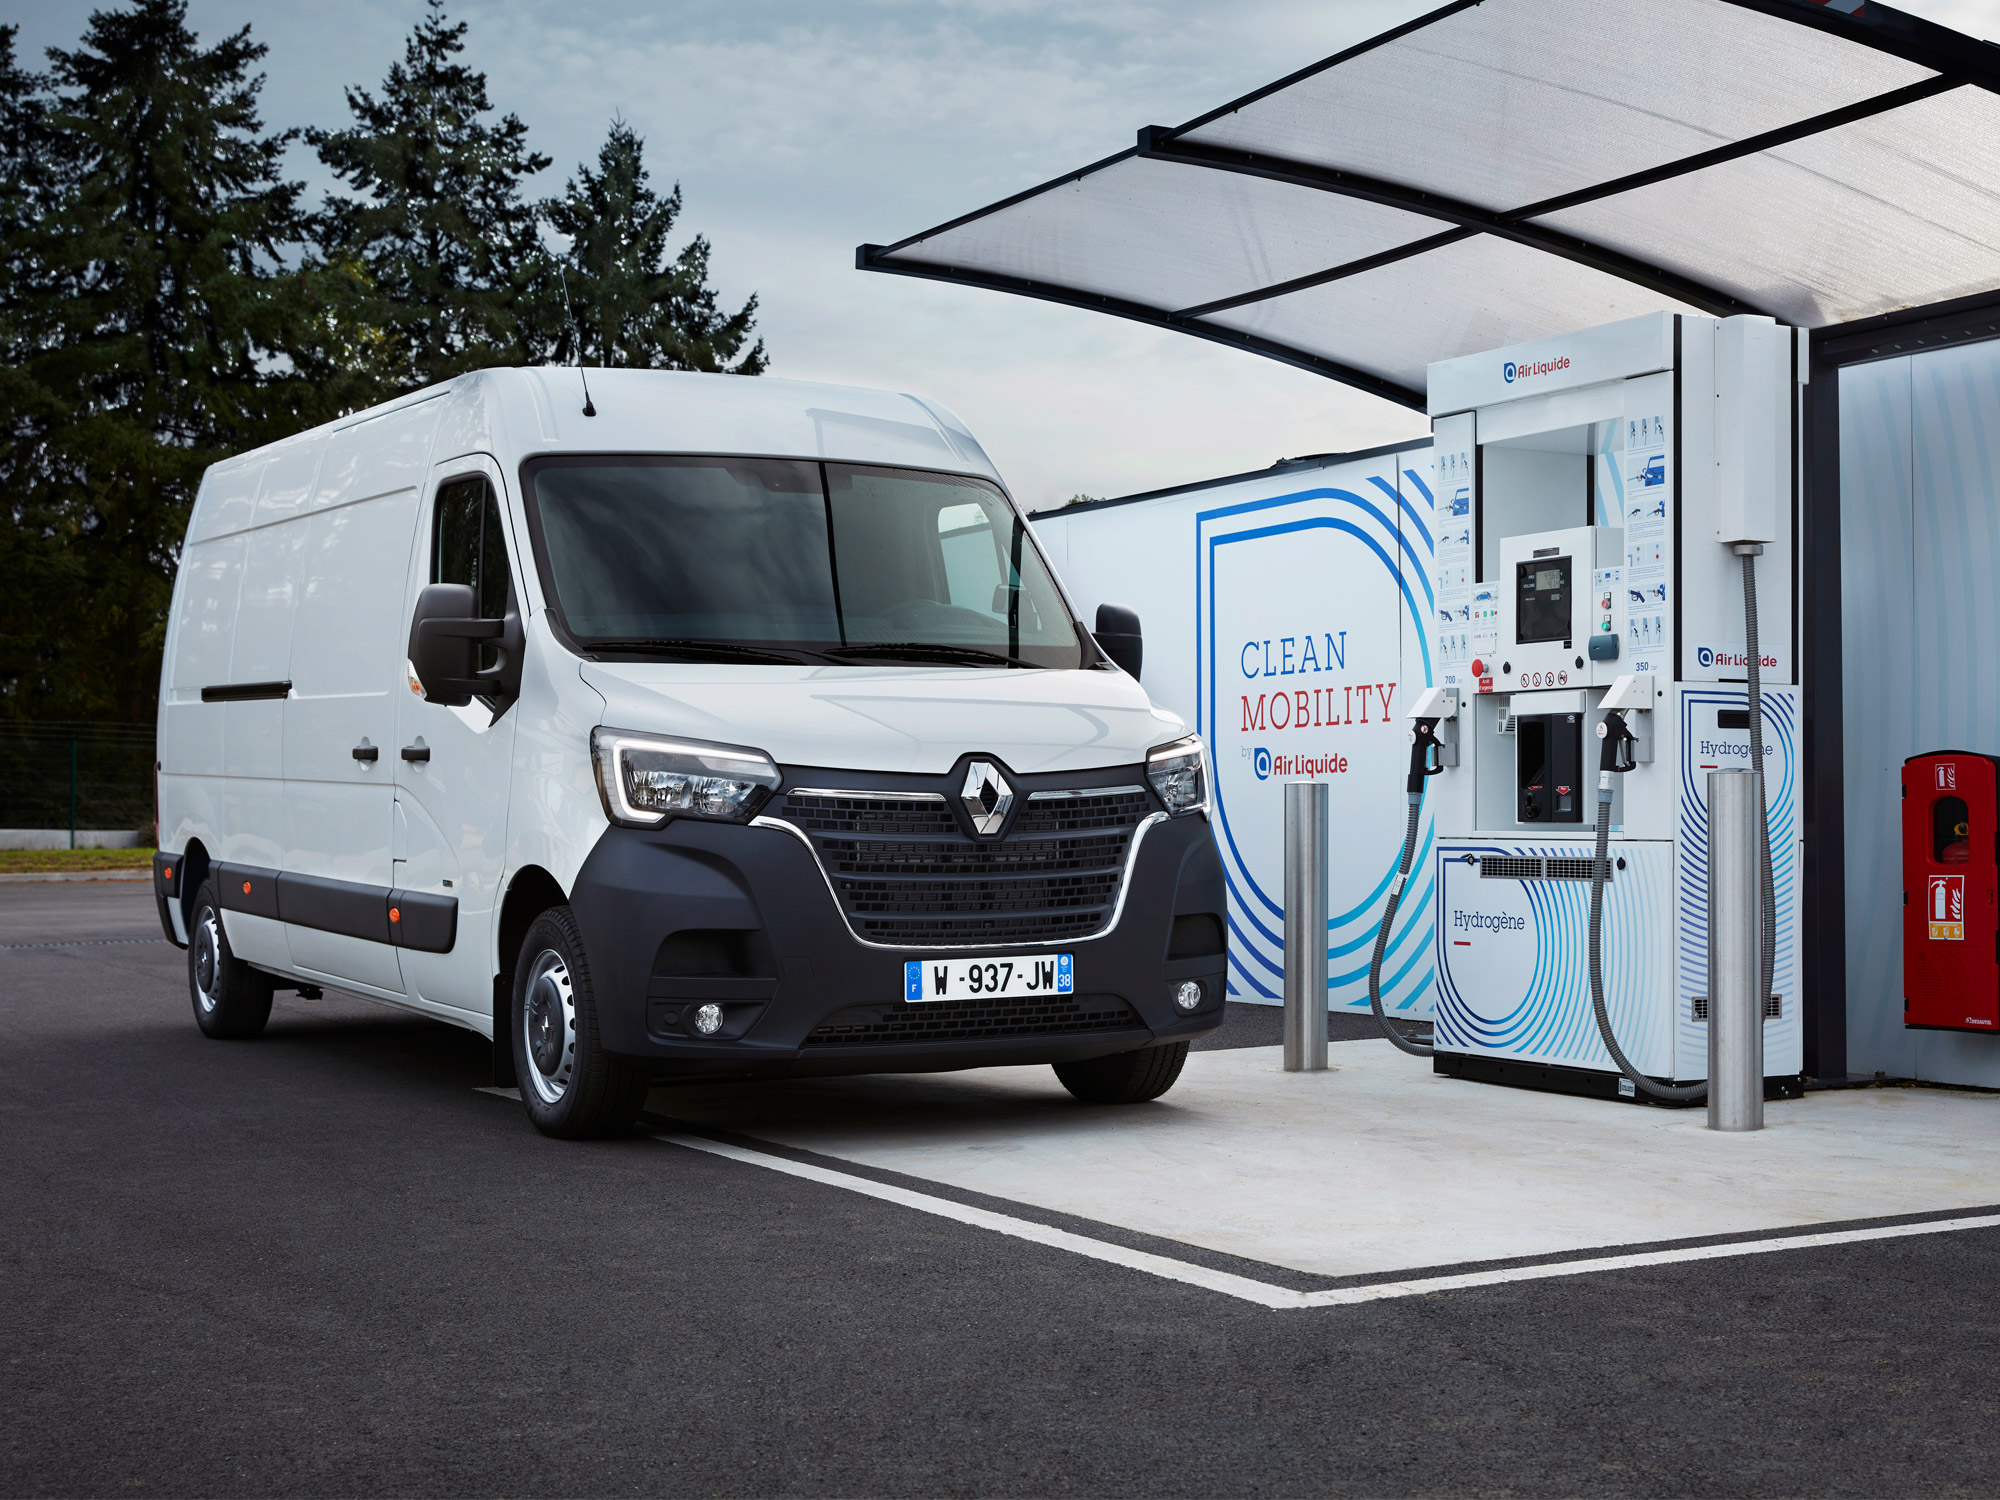 Renault förlänger räckvidden med vätgas